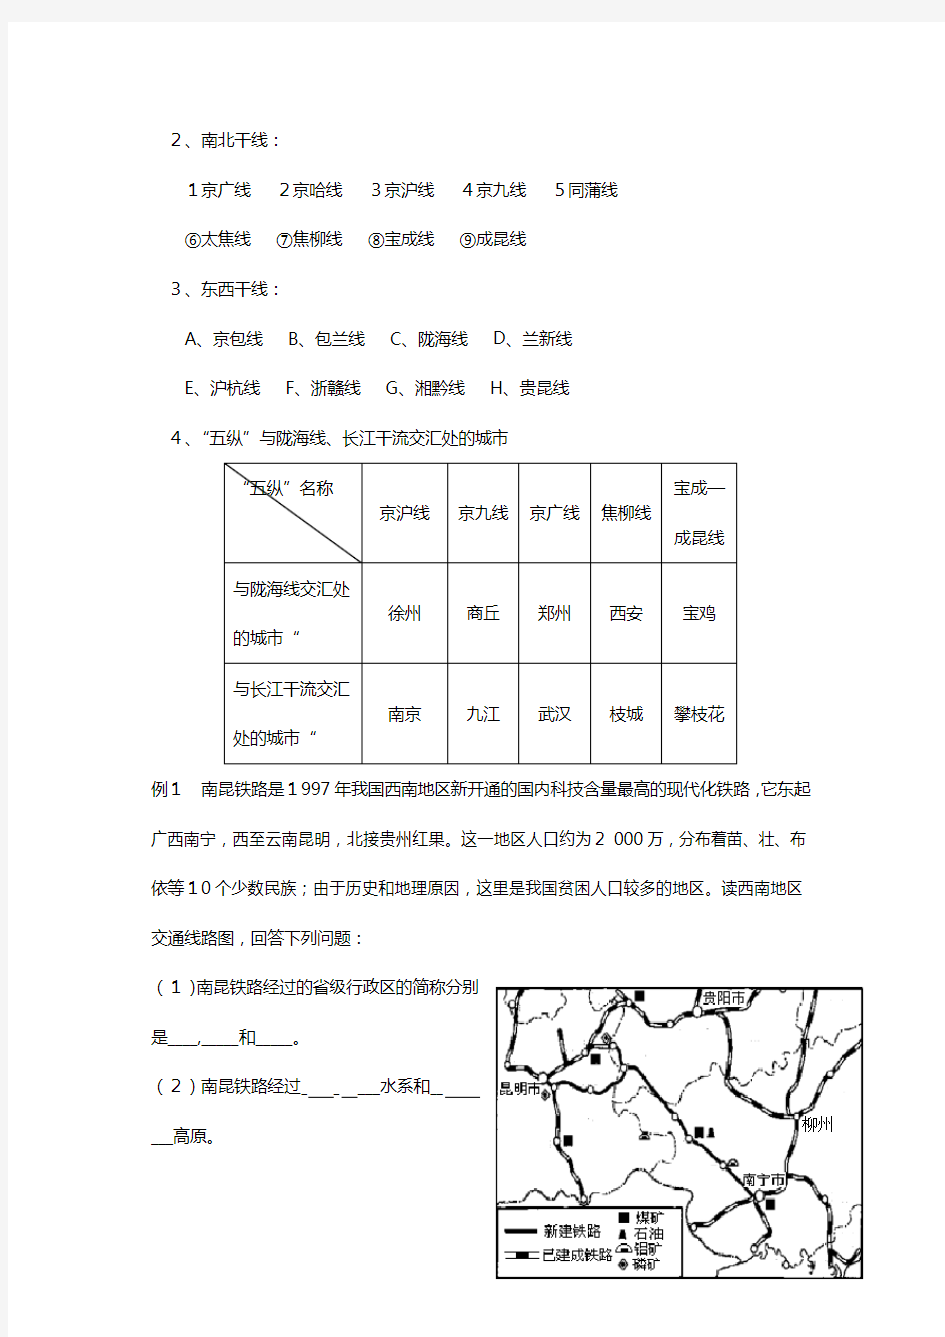 中国地理基础知识复习系列中国的交通商业和旅游业